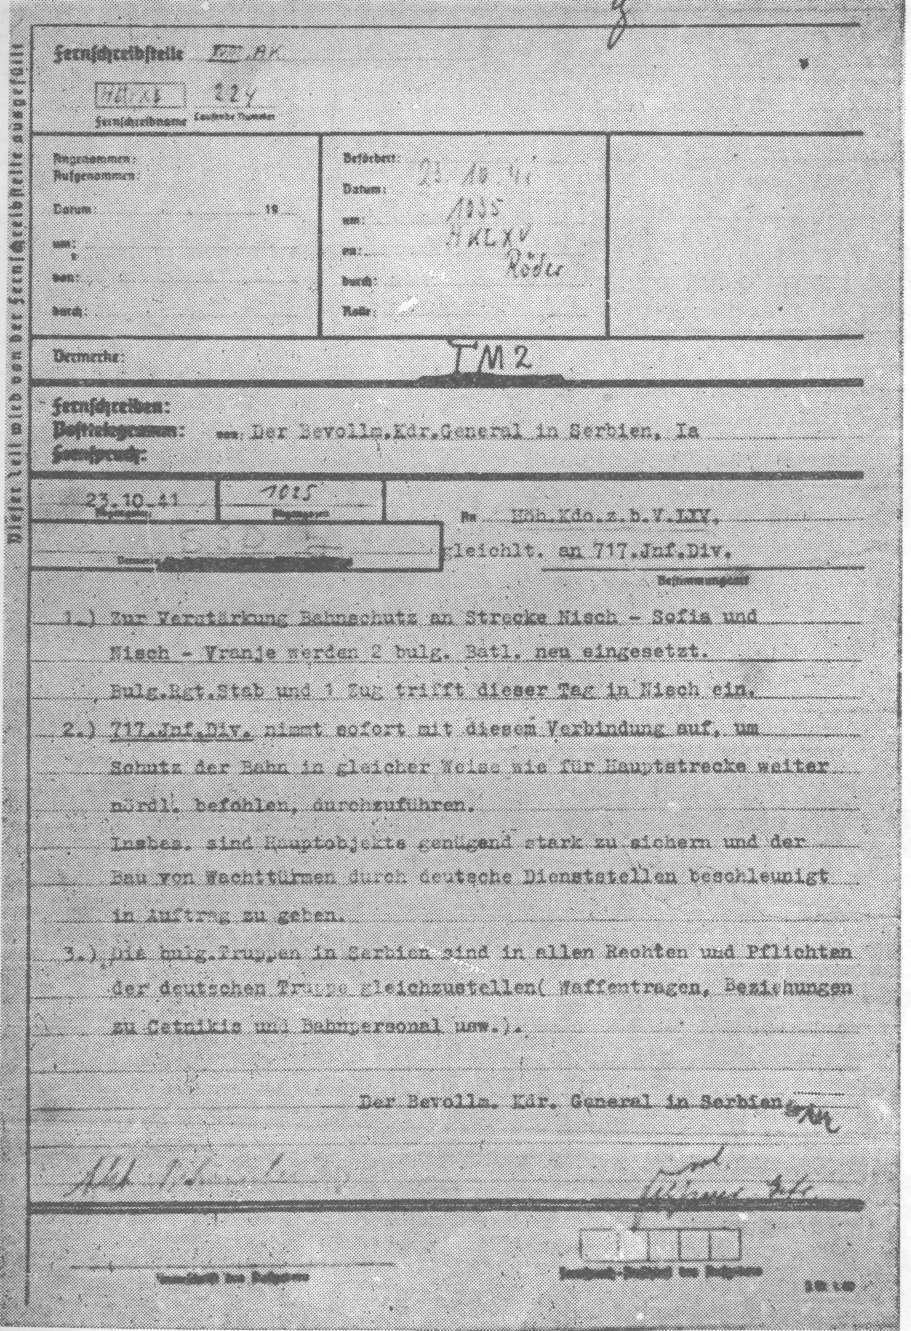 Telegram njemačkog opunomoćenog komandanta u Srbiji od 23. oktobra 1941. Komandi njemačkog 65.